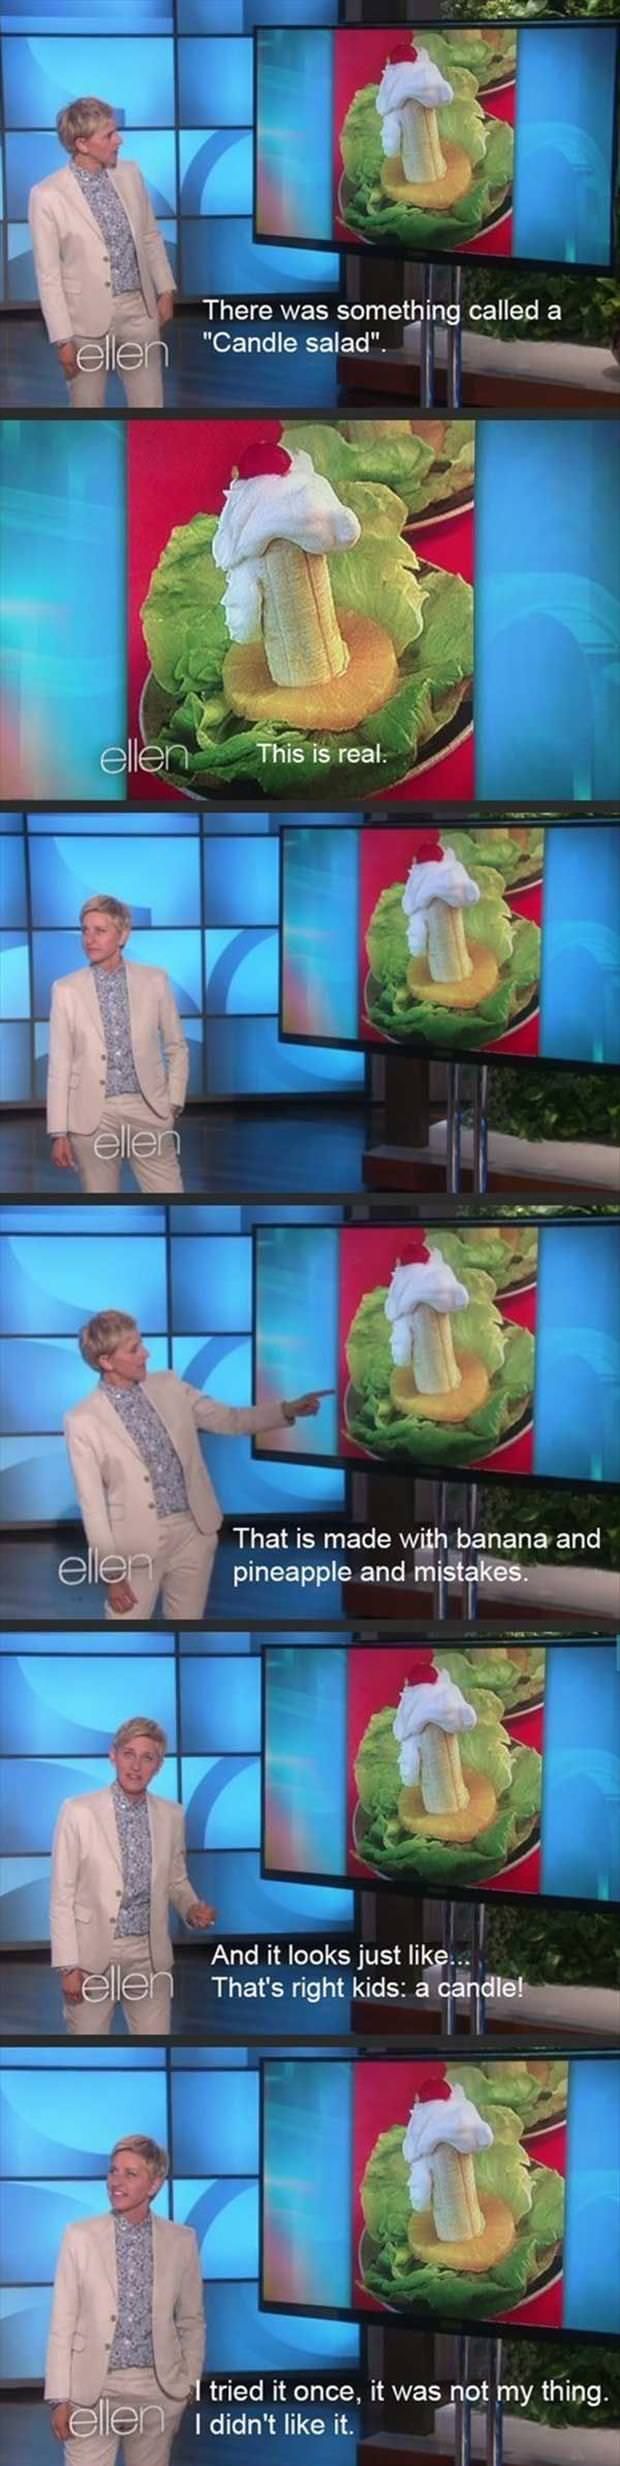 Ellen on candle salad